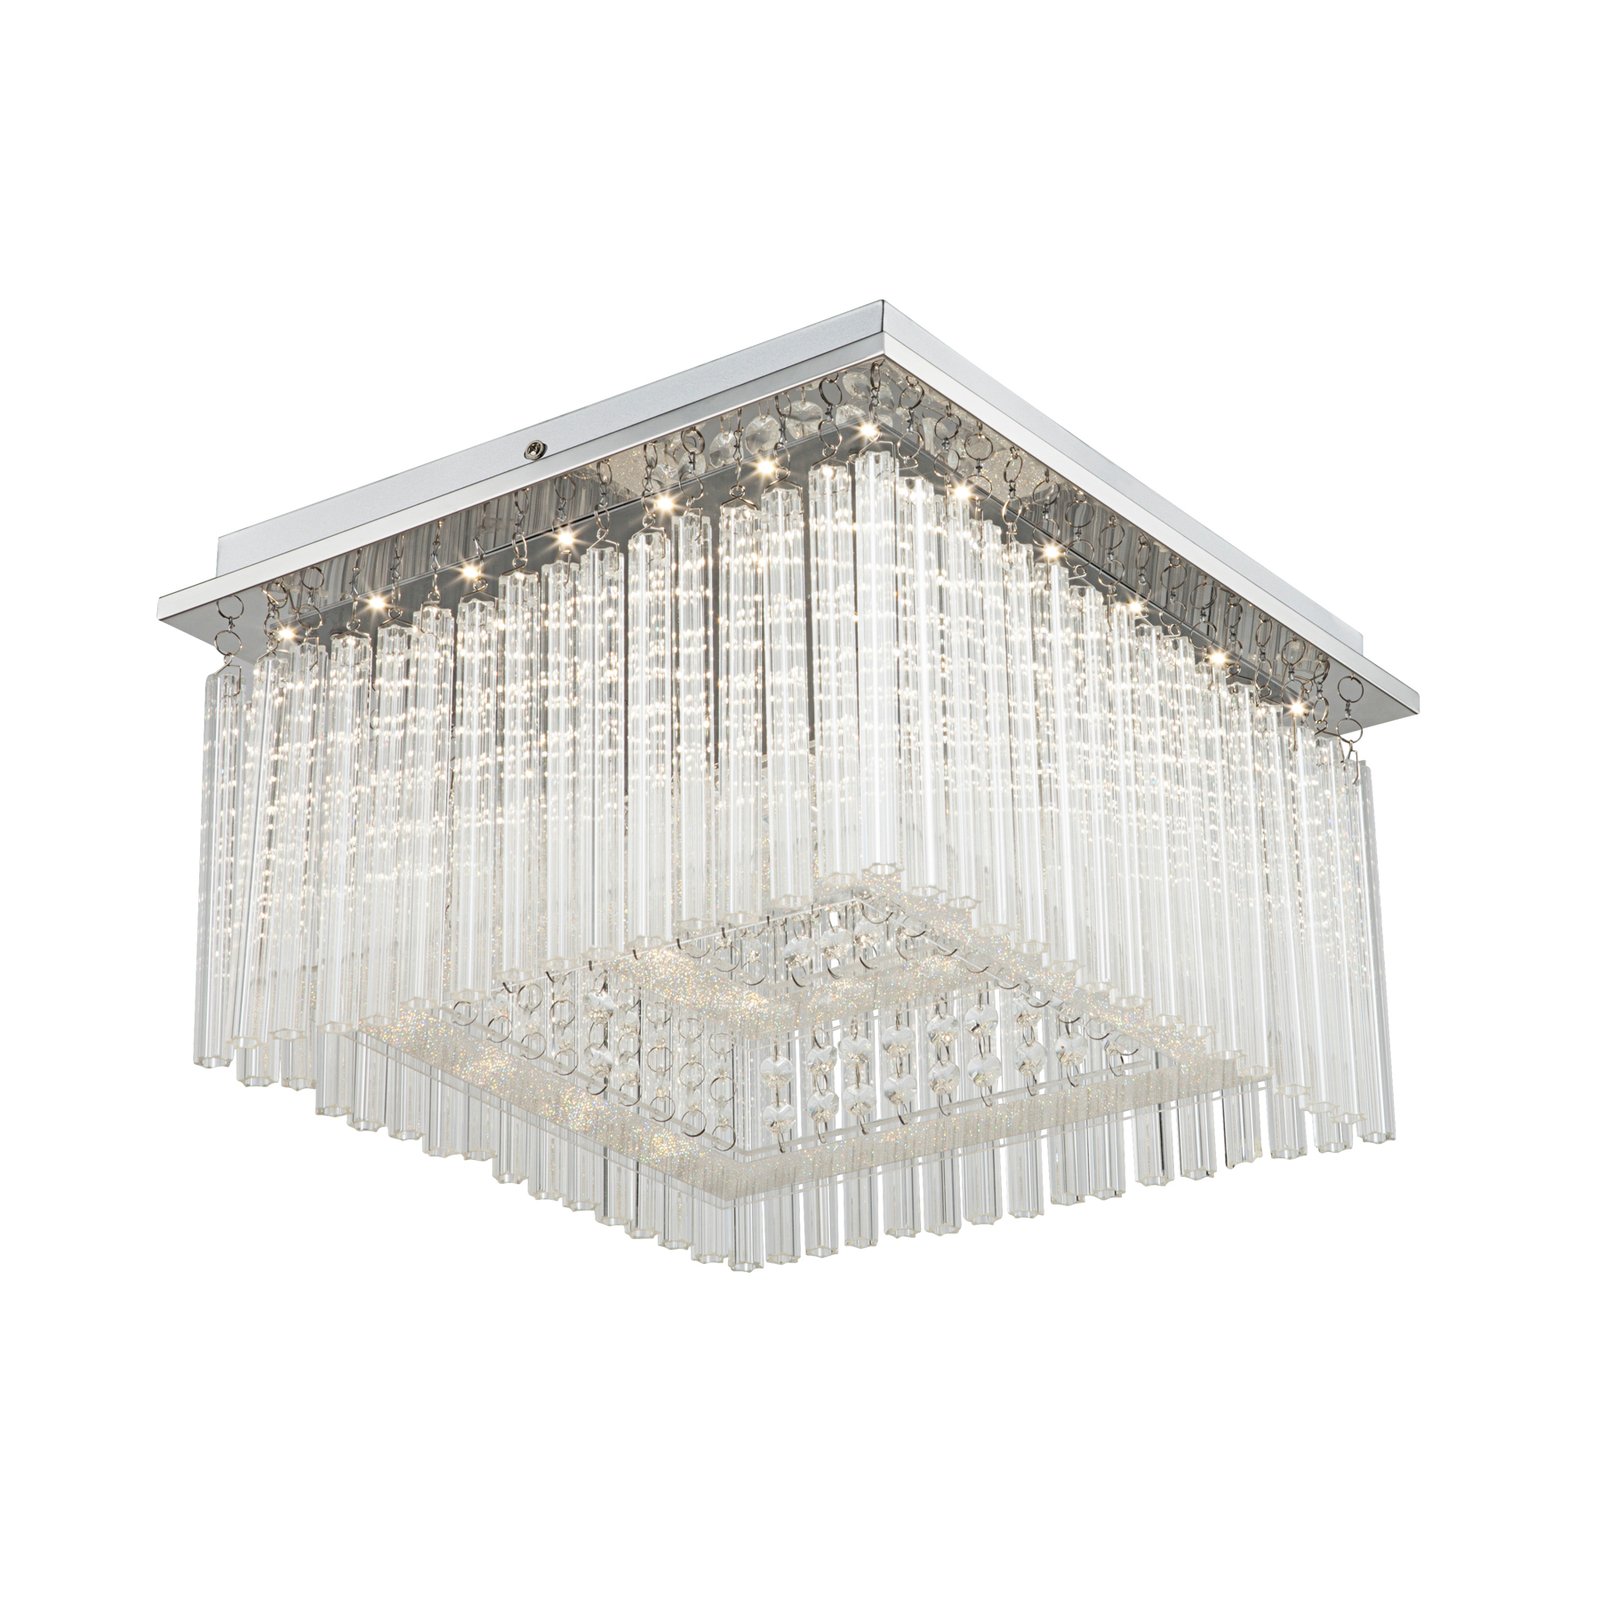 LED plafondlamp Vince, chroom, glaskristallen